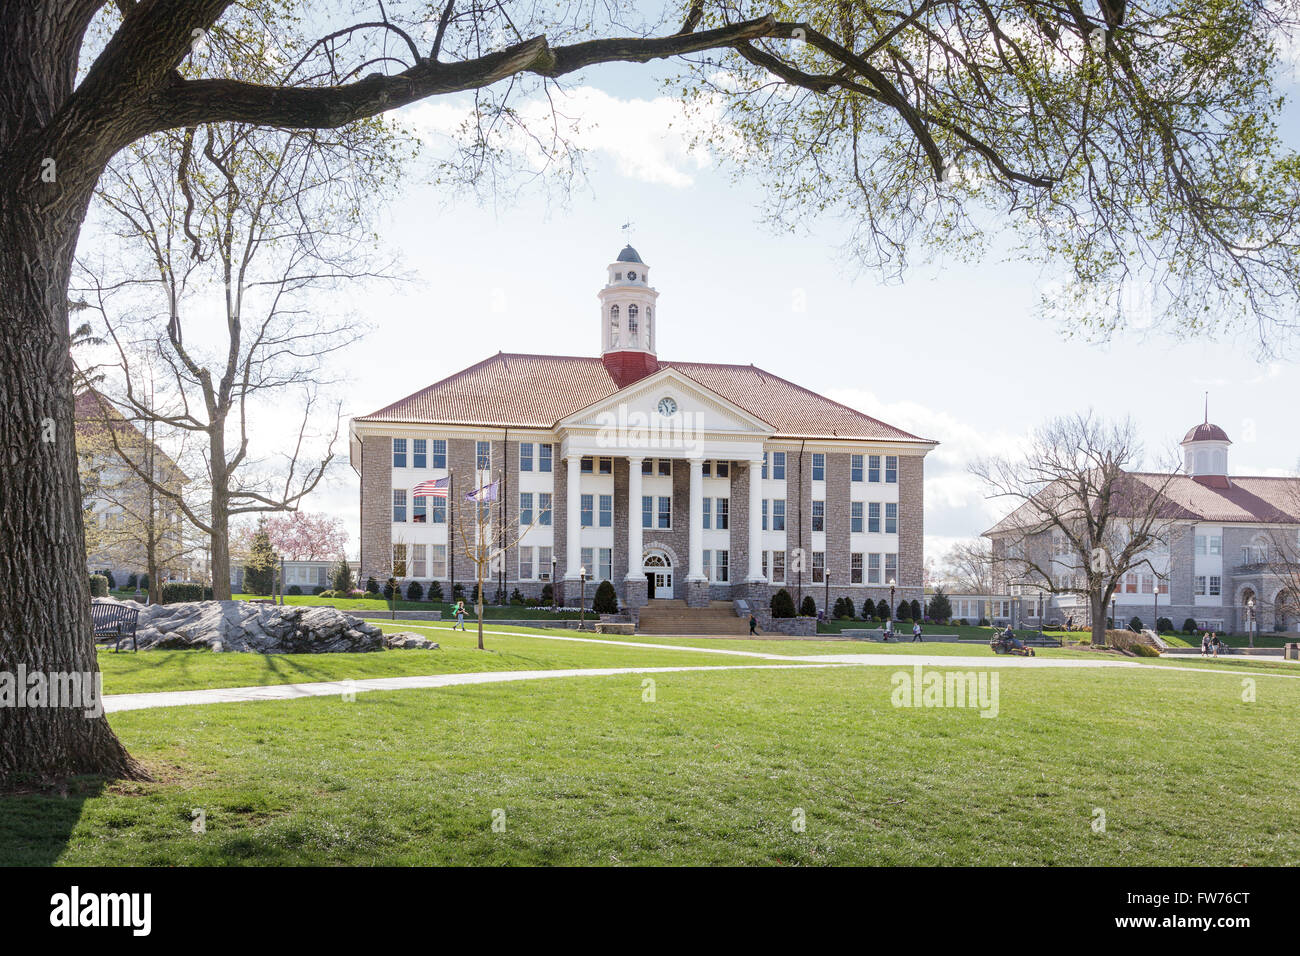 James Madison University, Harrisonburg, Shenandoah Valley, Virginia, USA. Stock Photo